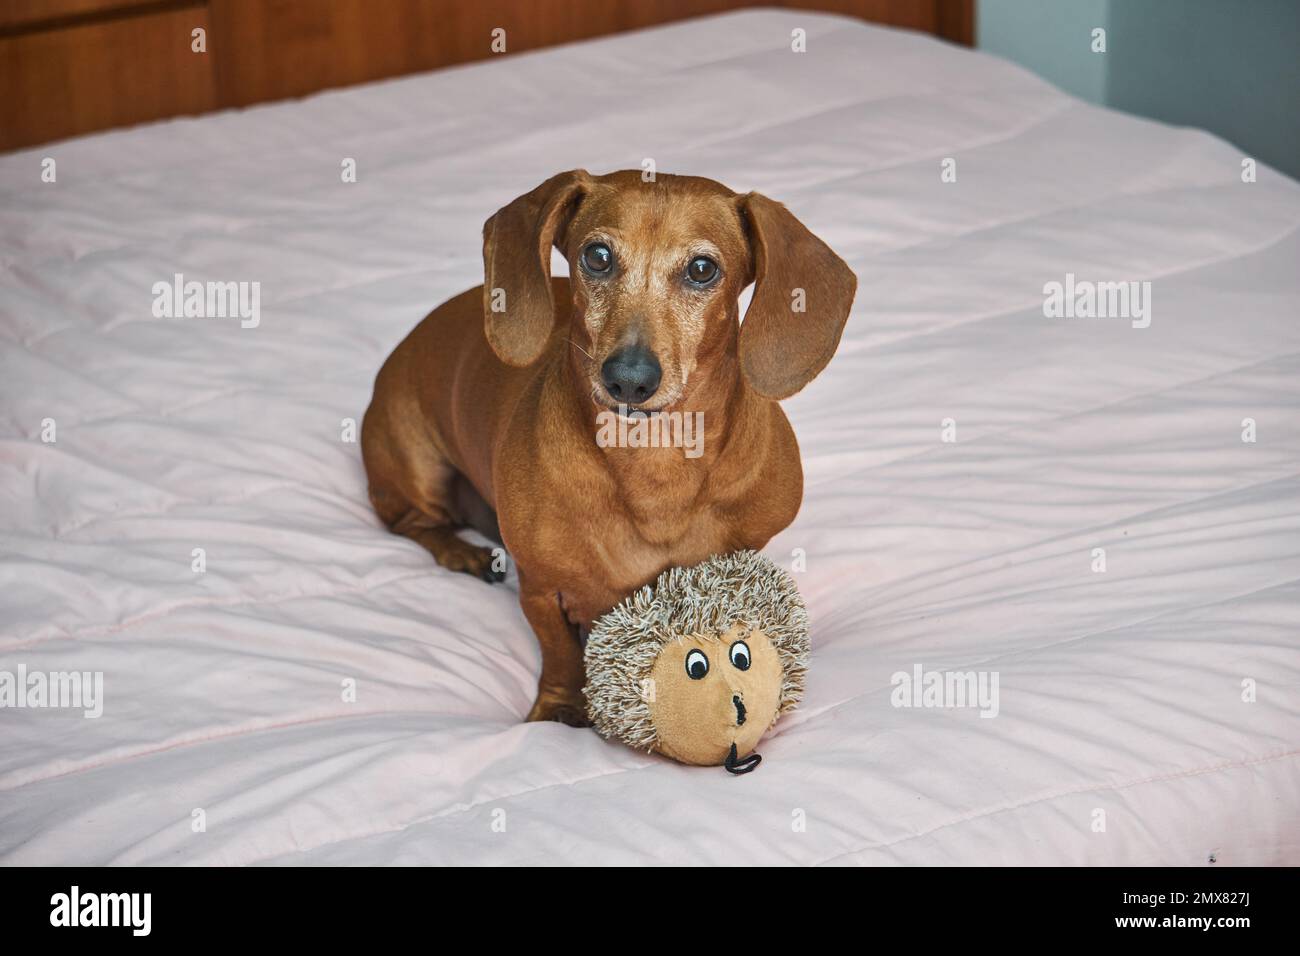 Adorable chien brun de Dachshund couché sur un jouet regardant l'appareil photo Banque D'Images